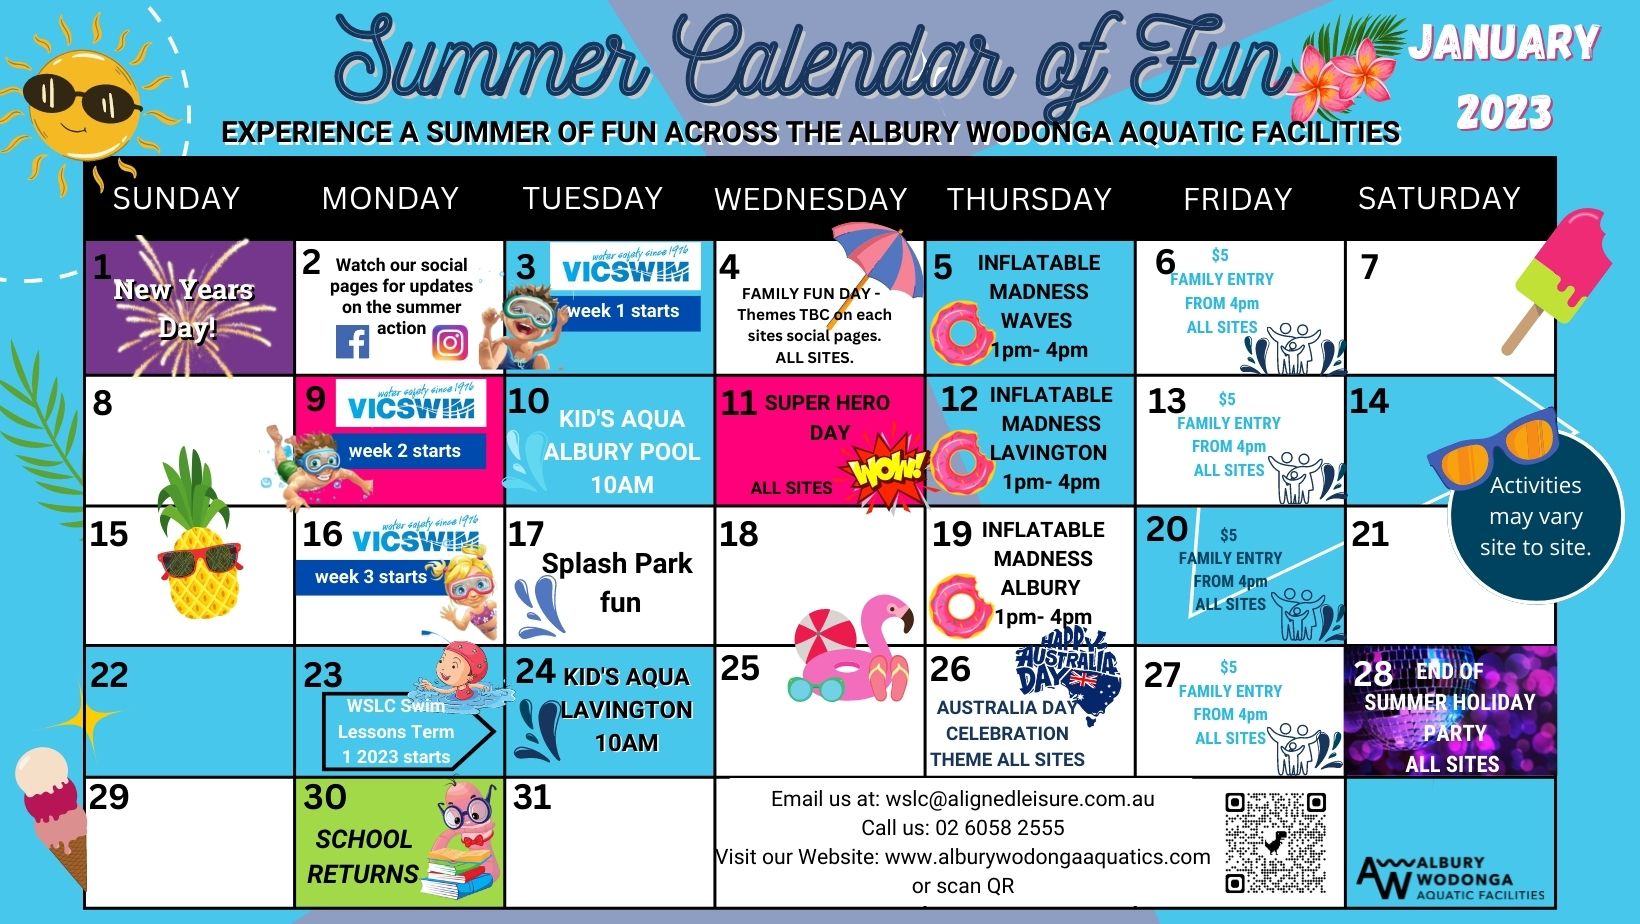 Summer Calendar of Fun 2022/2023 Albury Wodonga Aquatic Facilities